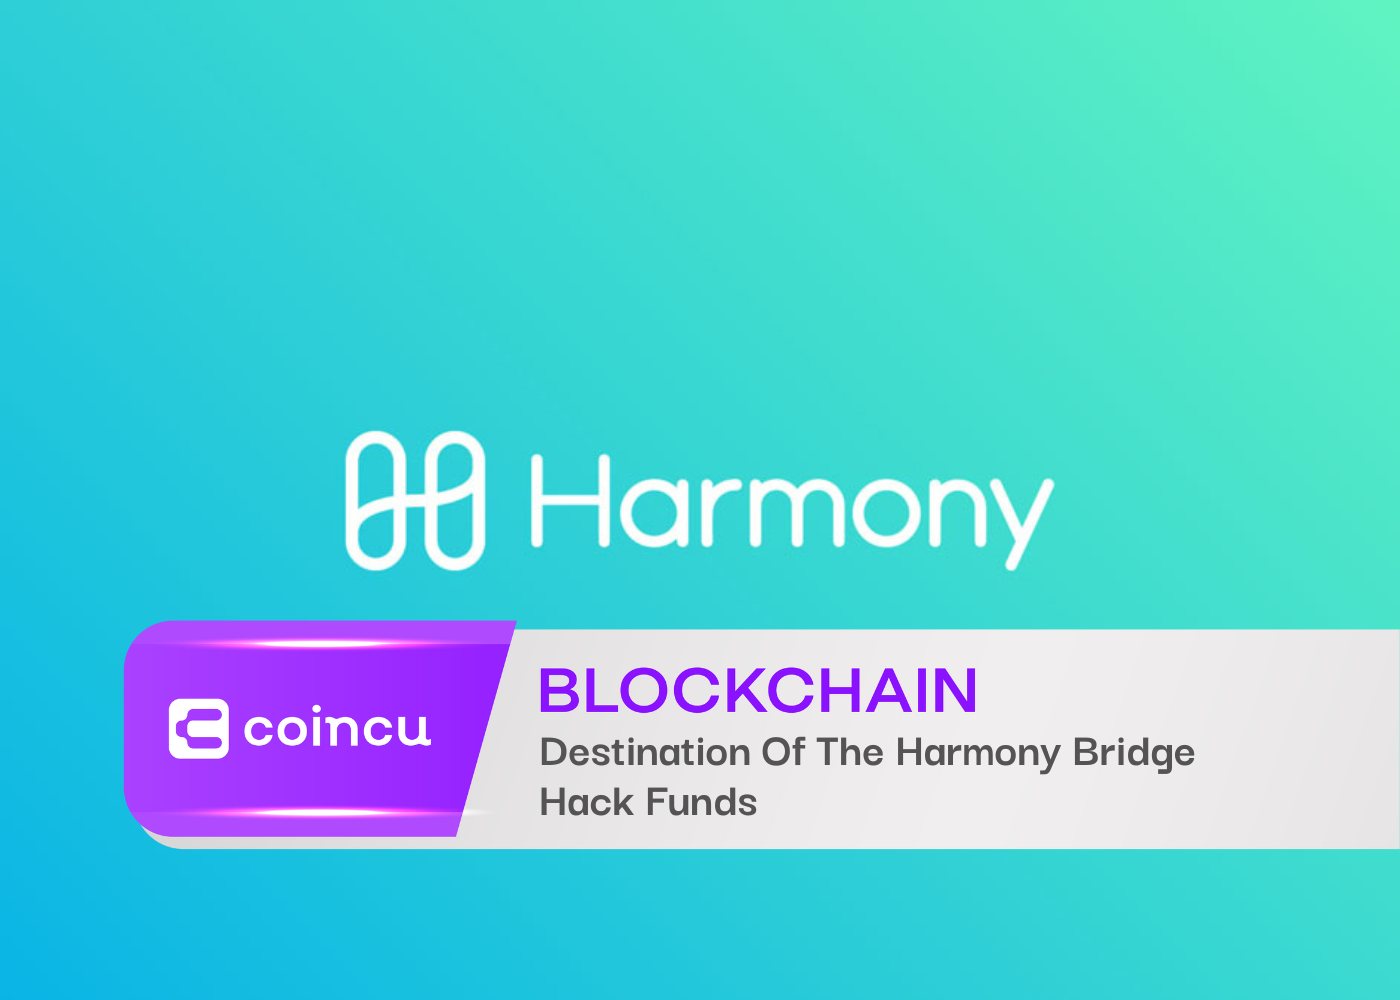 Destination Of The Harmony Bridge